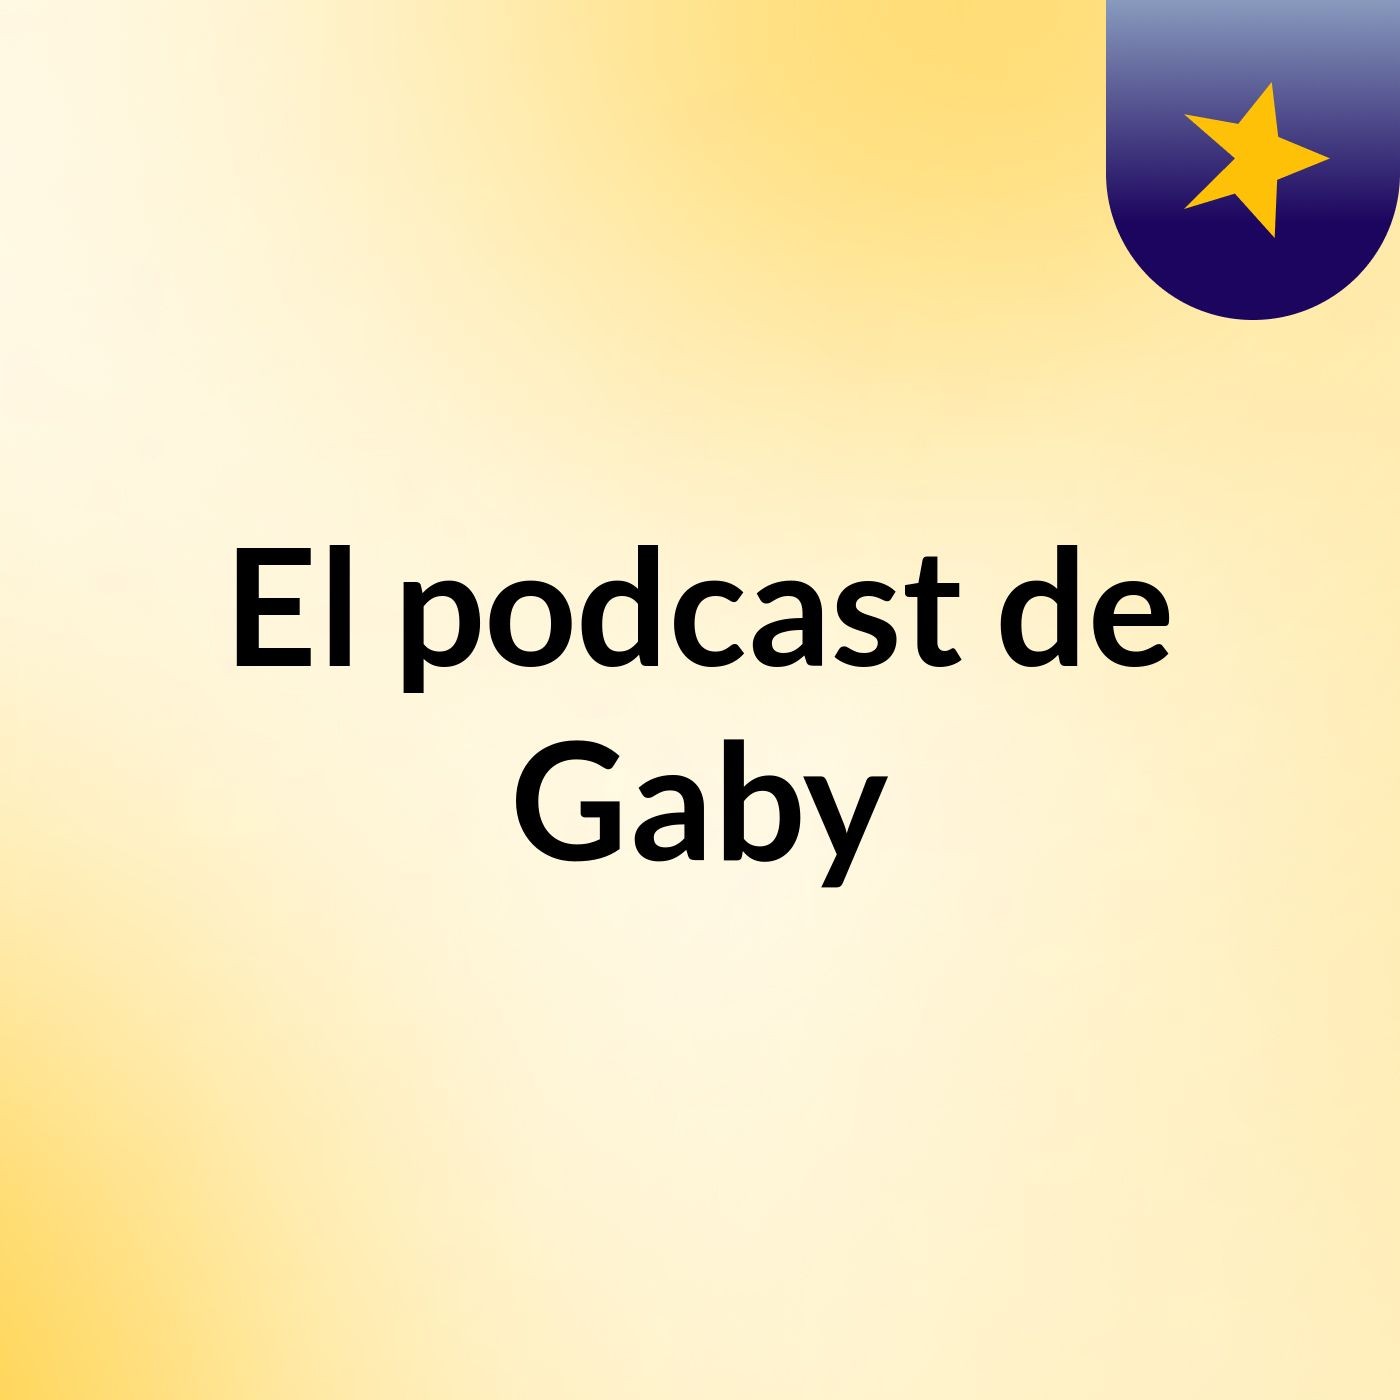 El podcast de Gaby